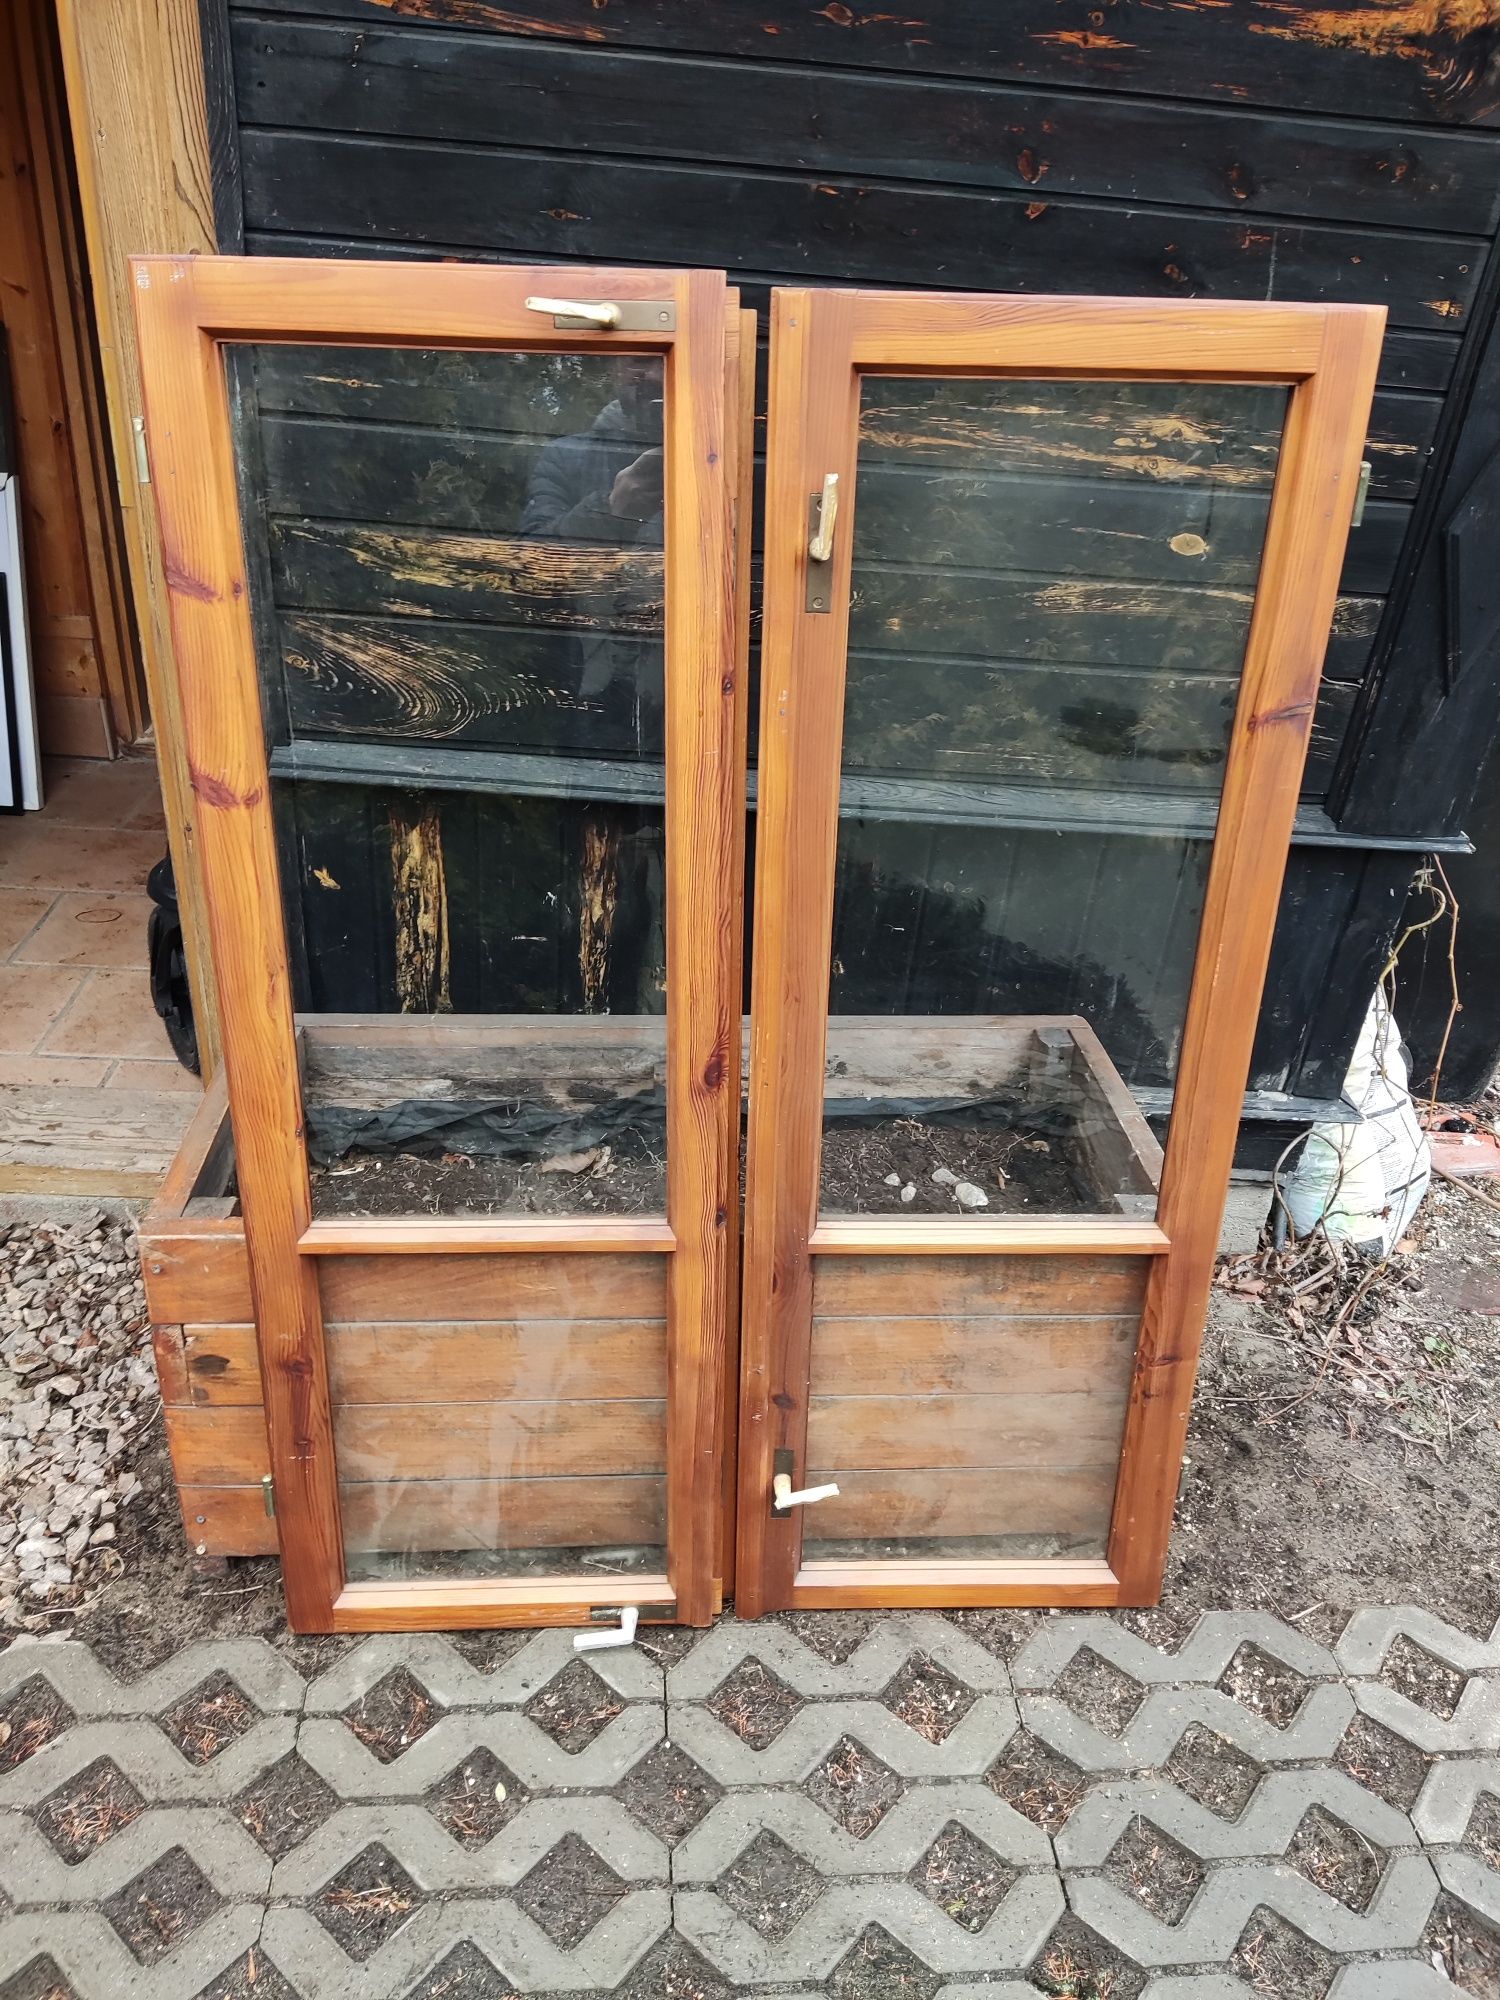 okna drewniane dubeltowe odrestaurowane jak nowe